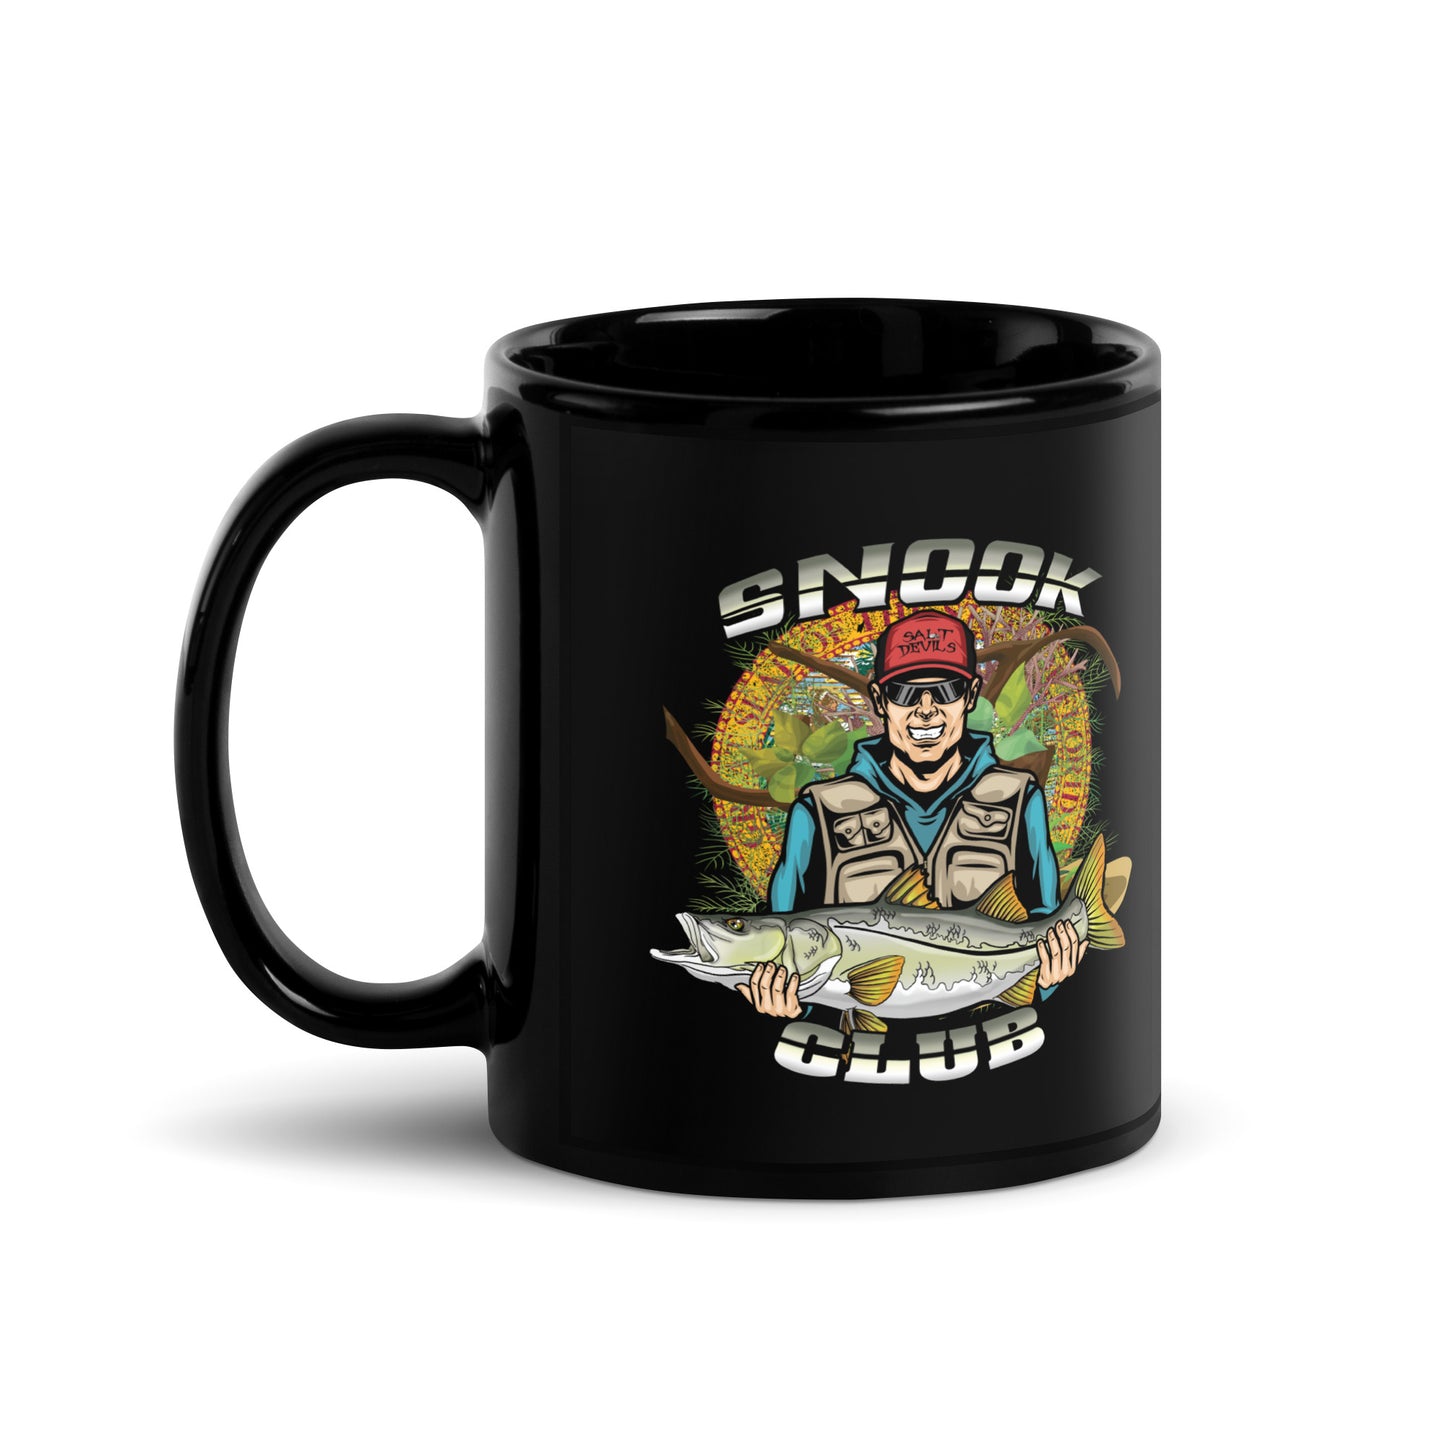 Snook Club Coffee Mug